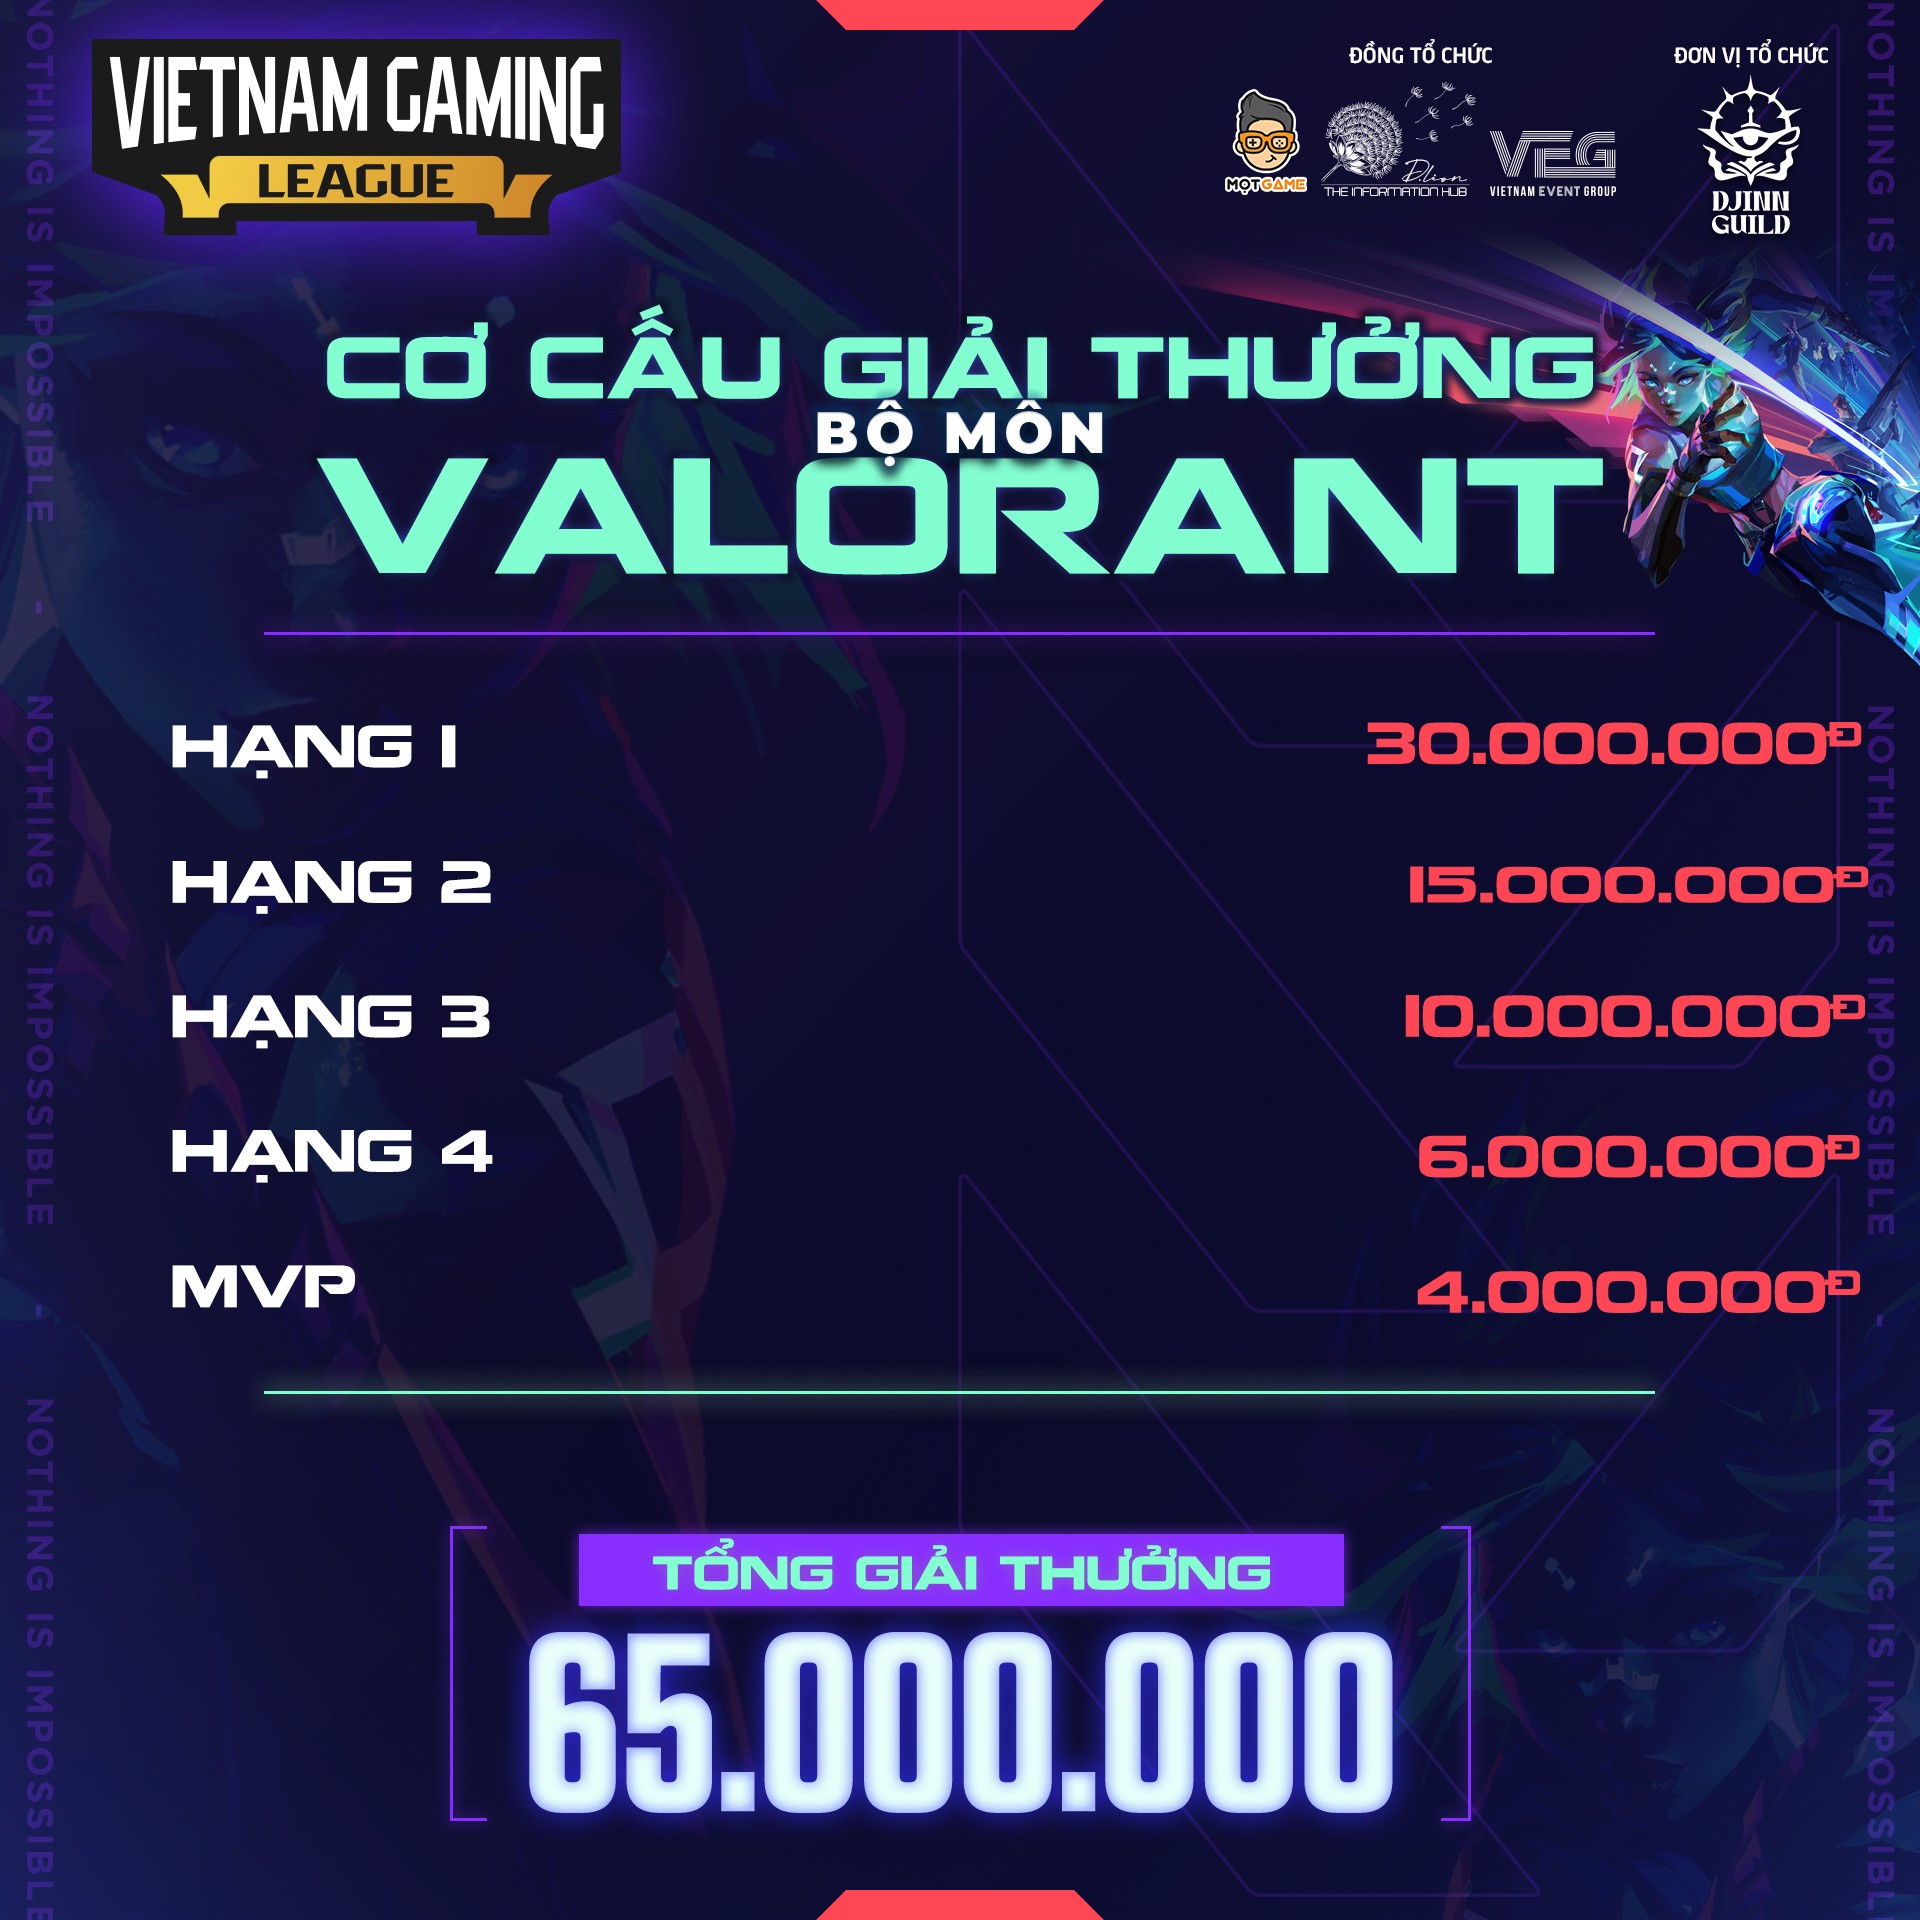 Vietnam Gaming League - Valorant Community Tournament: Giải đấu thường niên chuyên nghiệp và hấp dẫn